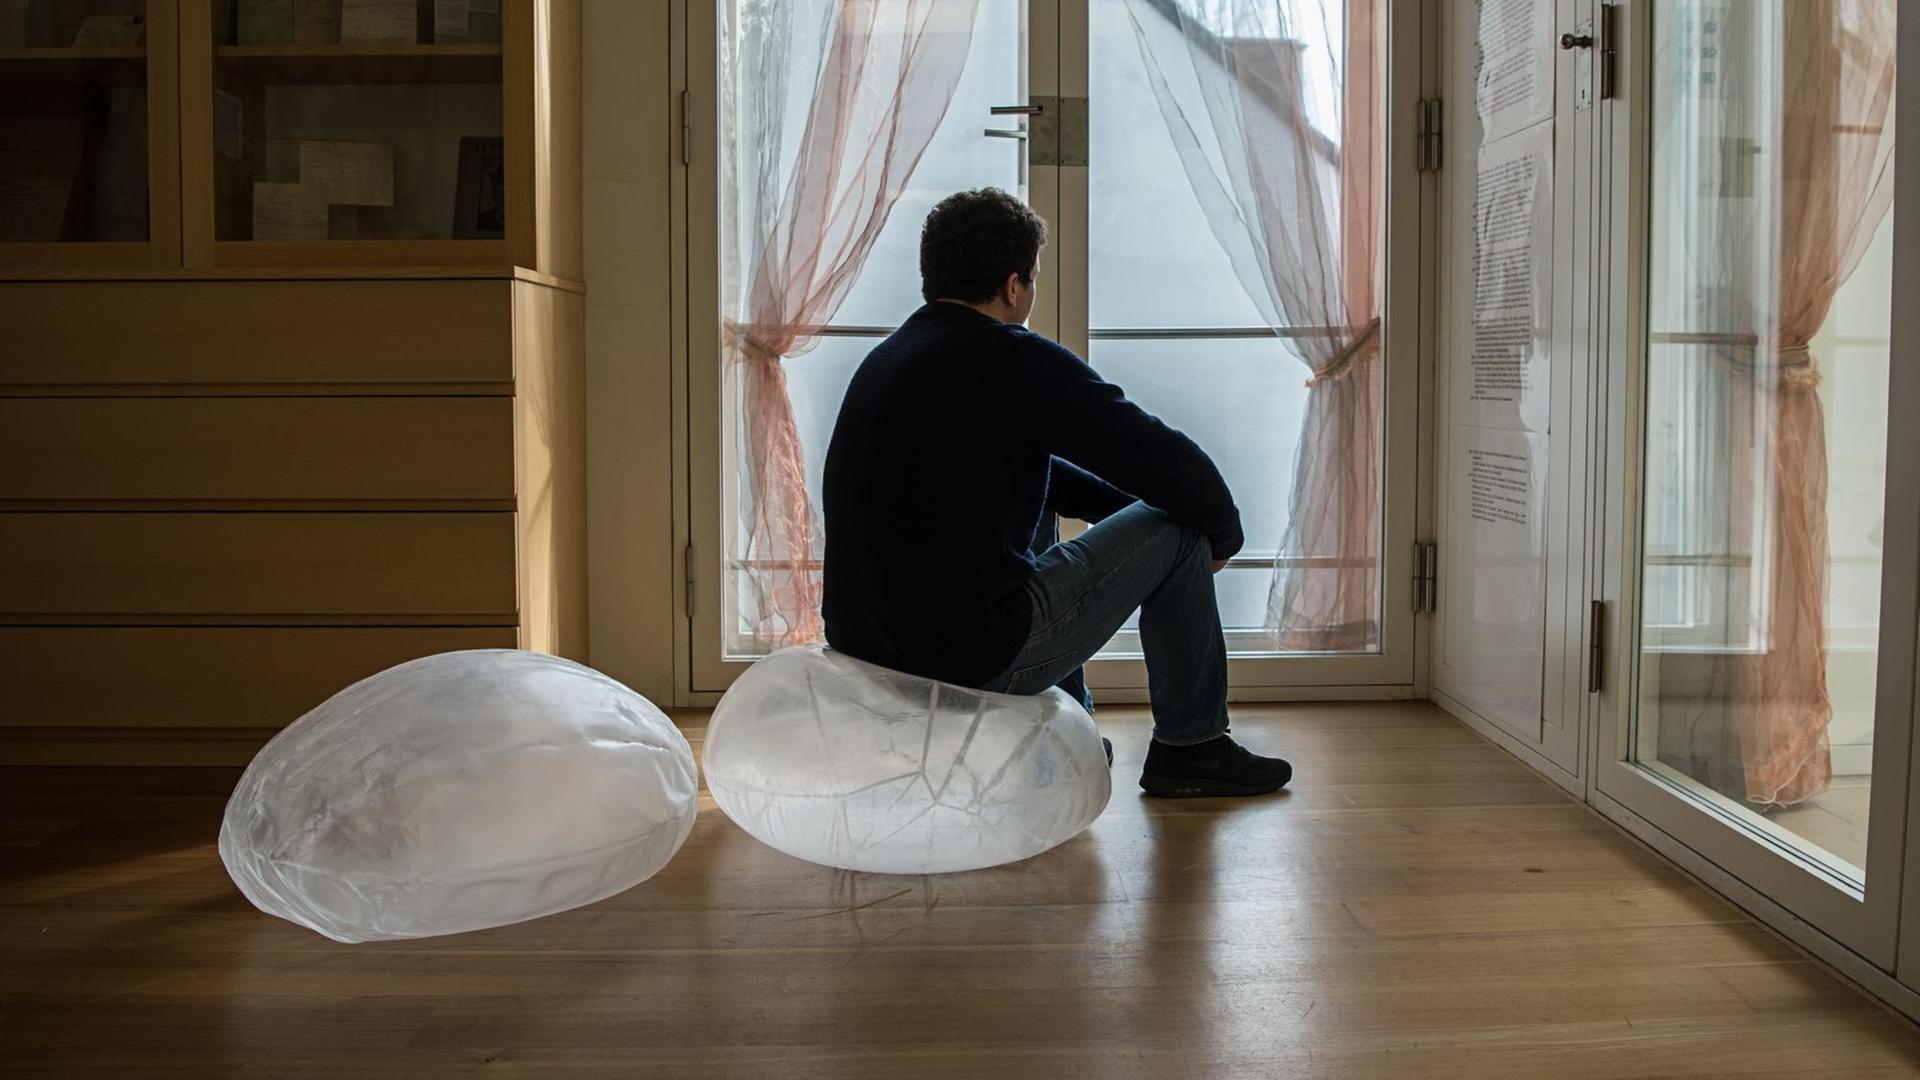 Ein Mann sitzt in einem Raum mit Holzfußboden auf einem durchsichtigen Sitzsack.